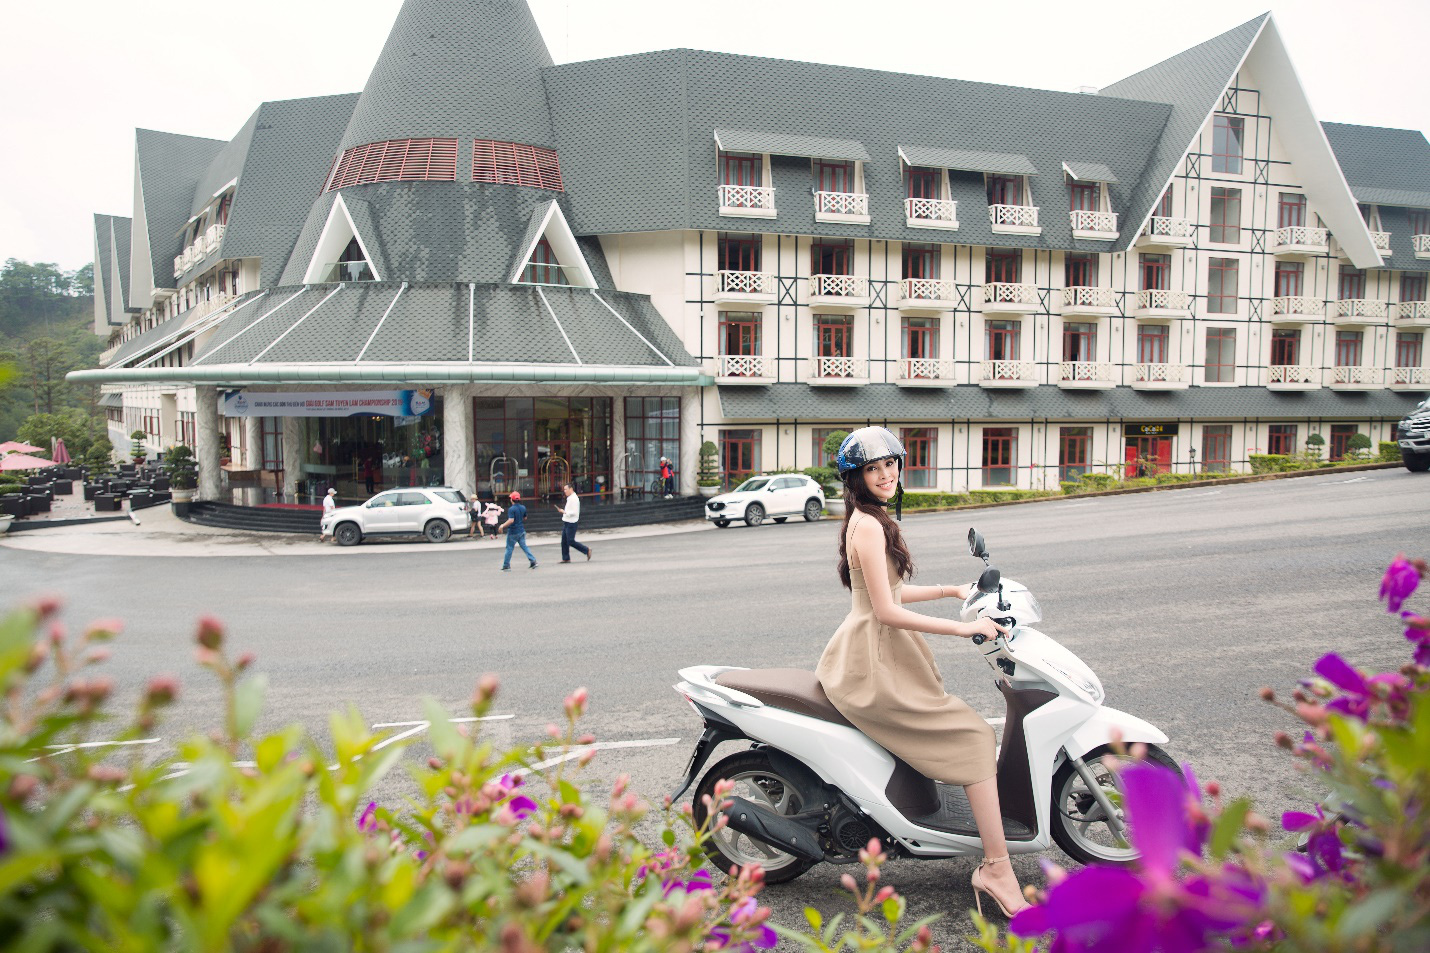 Nhân dịp lễ hội hoa, Hoa hậu Tiểu Vy chọn SAM Tuyền Lâm Golf & Resorts cho kì nghỉ dưỡng tại Đà Lạt - Ảnh 7.